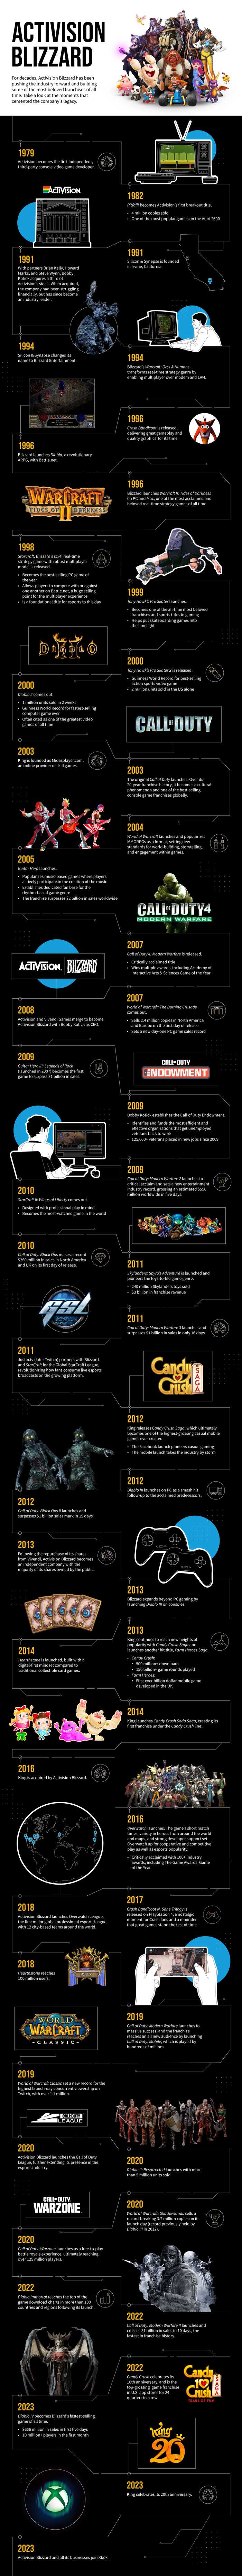 Activision Blizzard'ın 44 yıllık uzun geçmişini tek ve aynı derecede uzun bir infografikte görüntüleyin - Dünyadan Güncel Teknoloji Haberleri